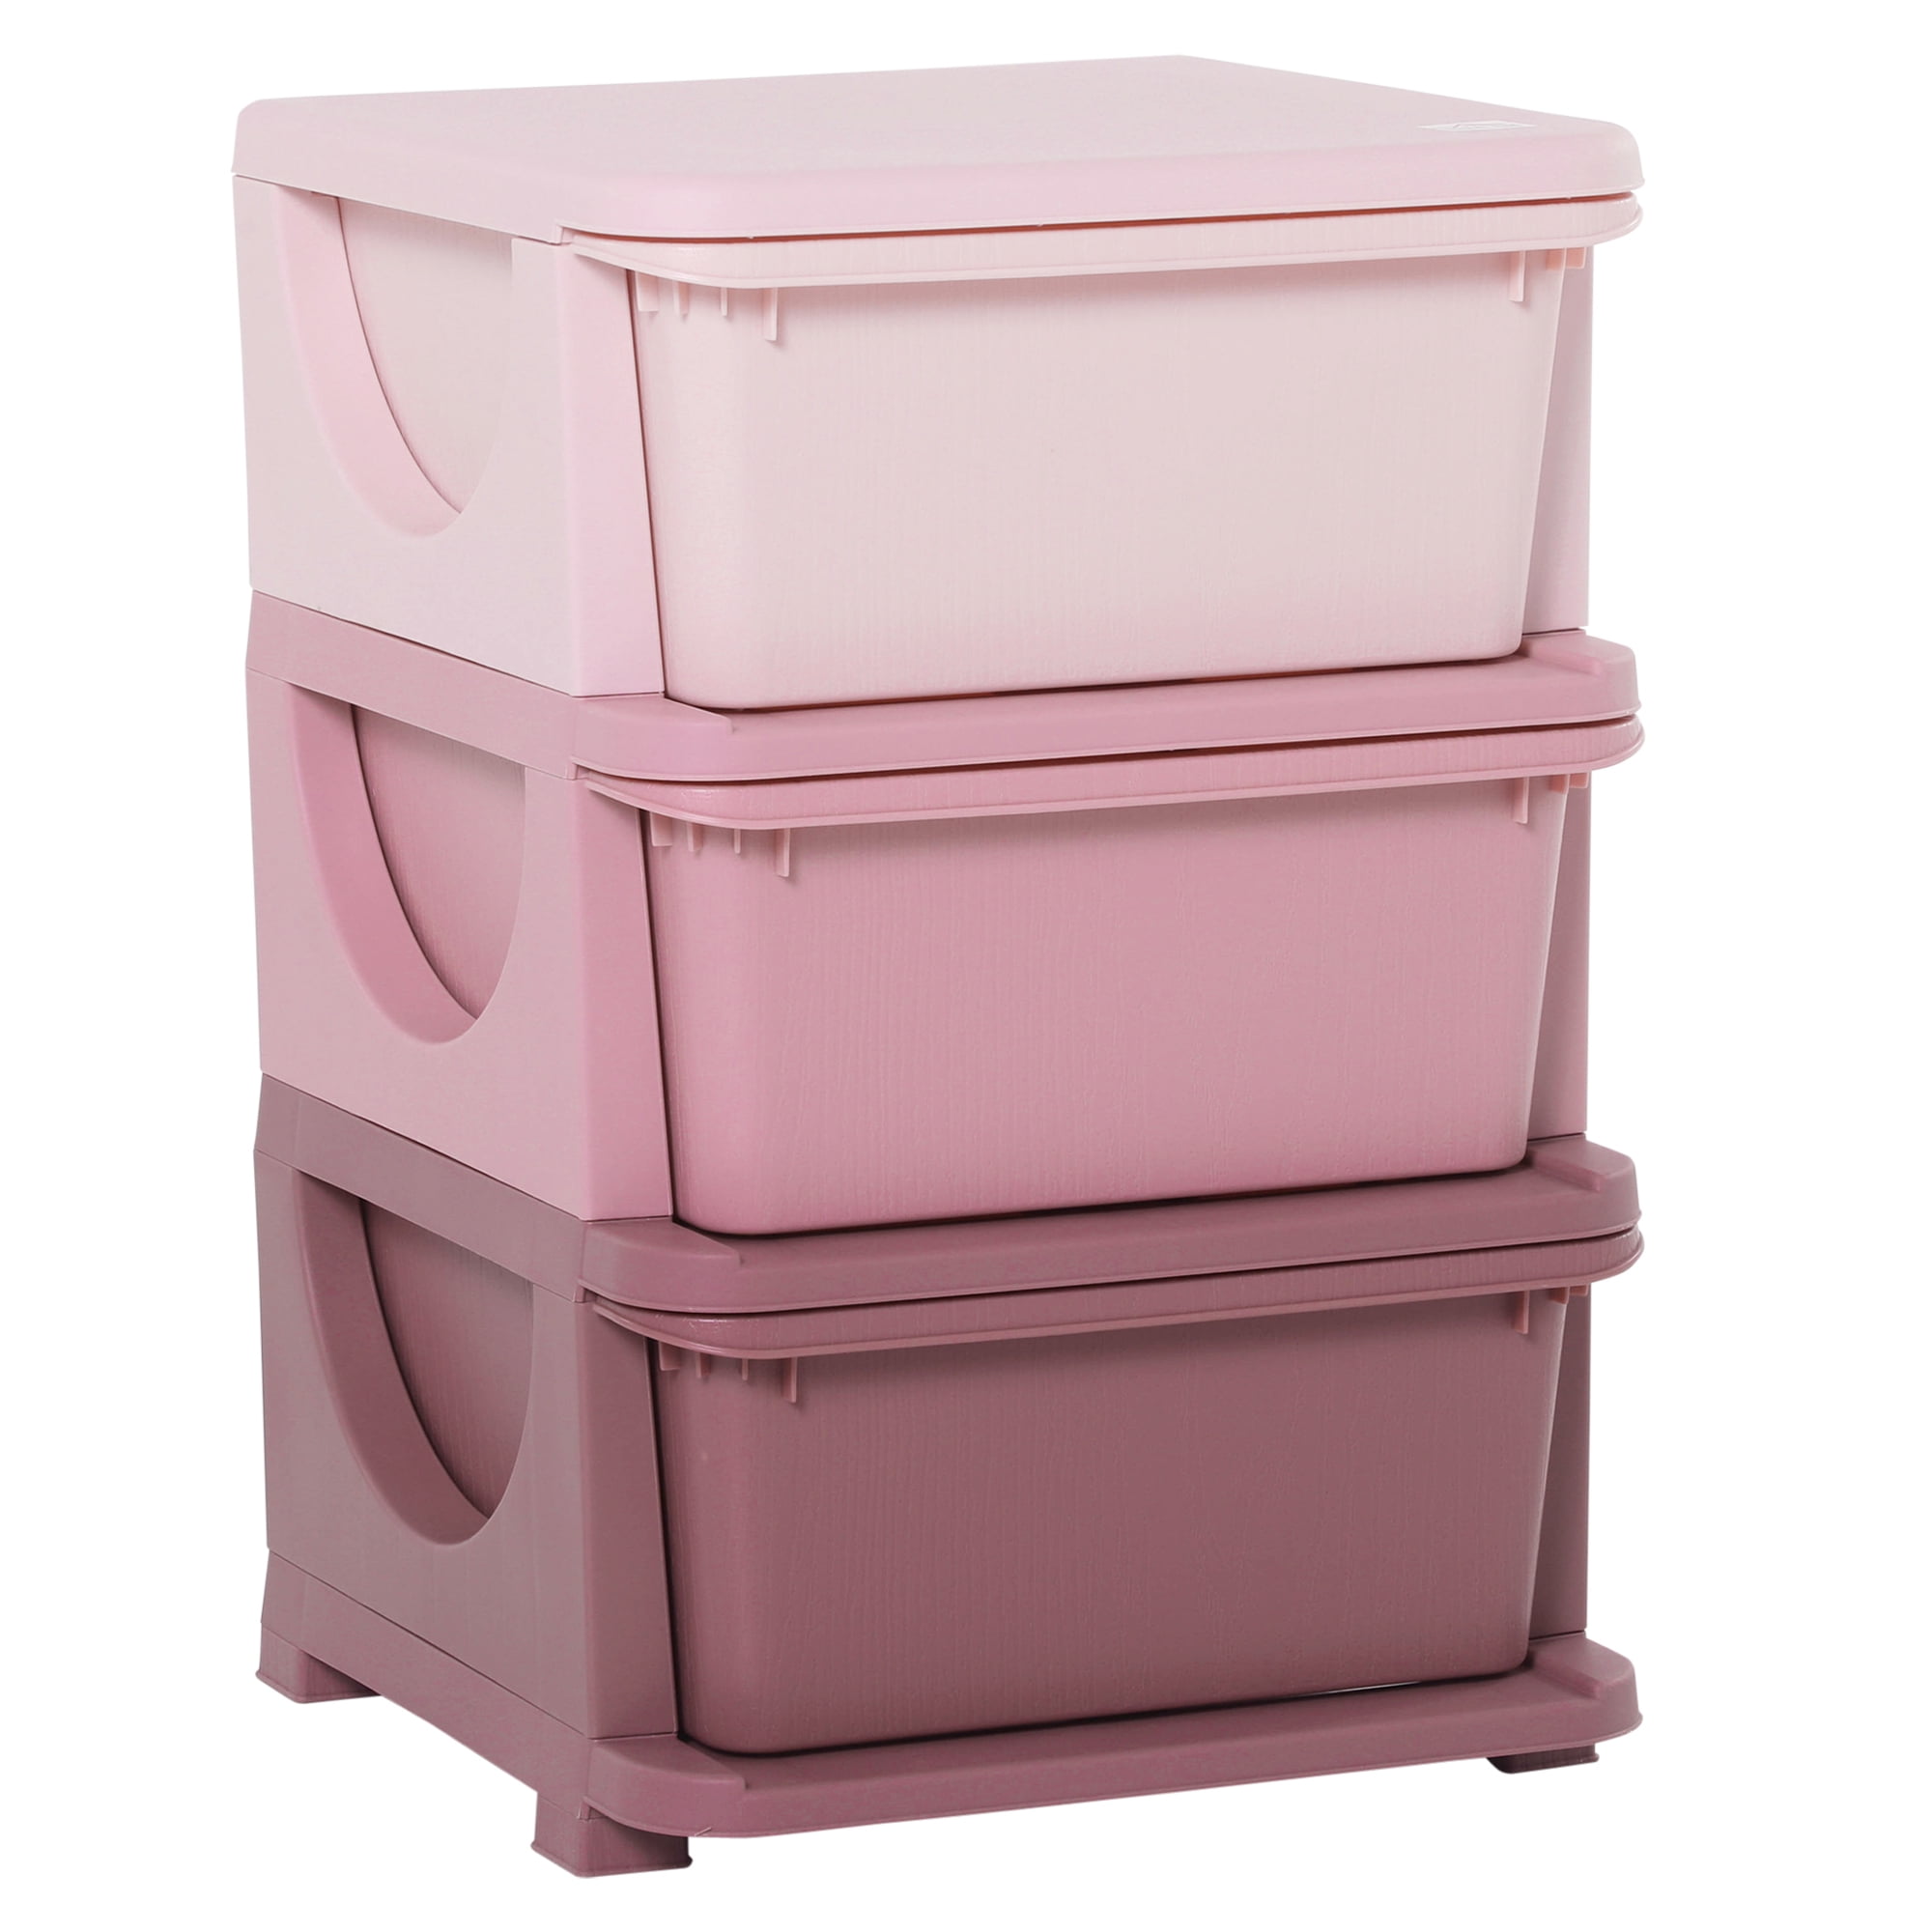 Qaba Kids Storage Unit Dresser Tower, Girls Pink Dresser